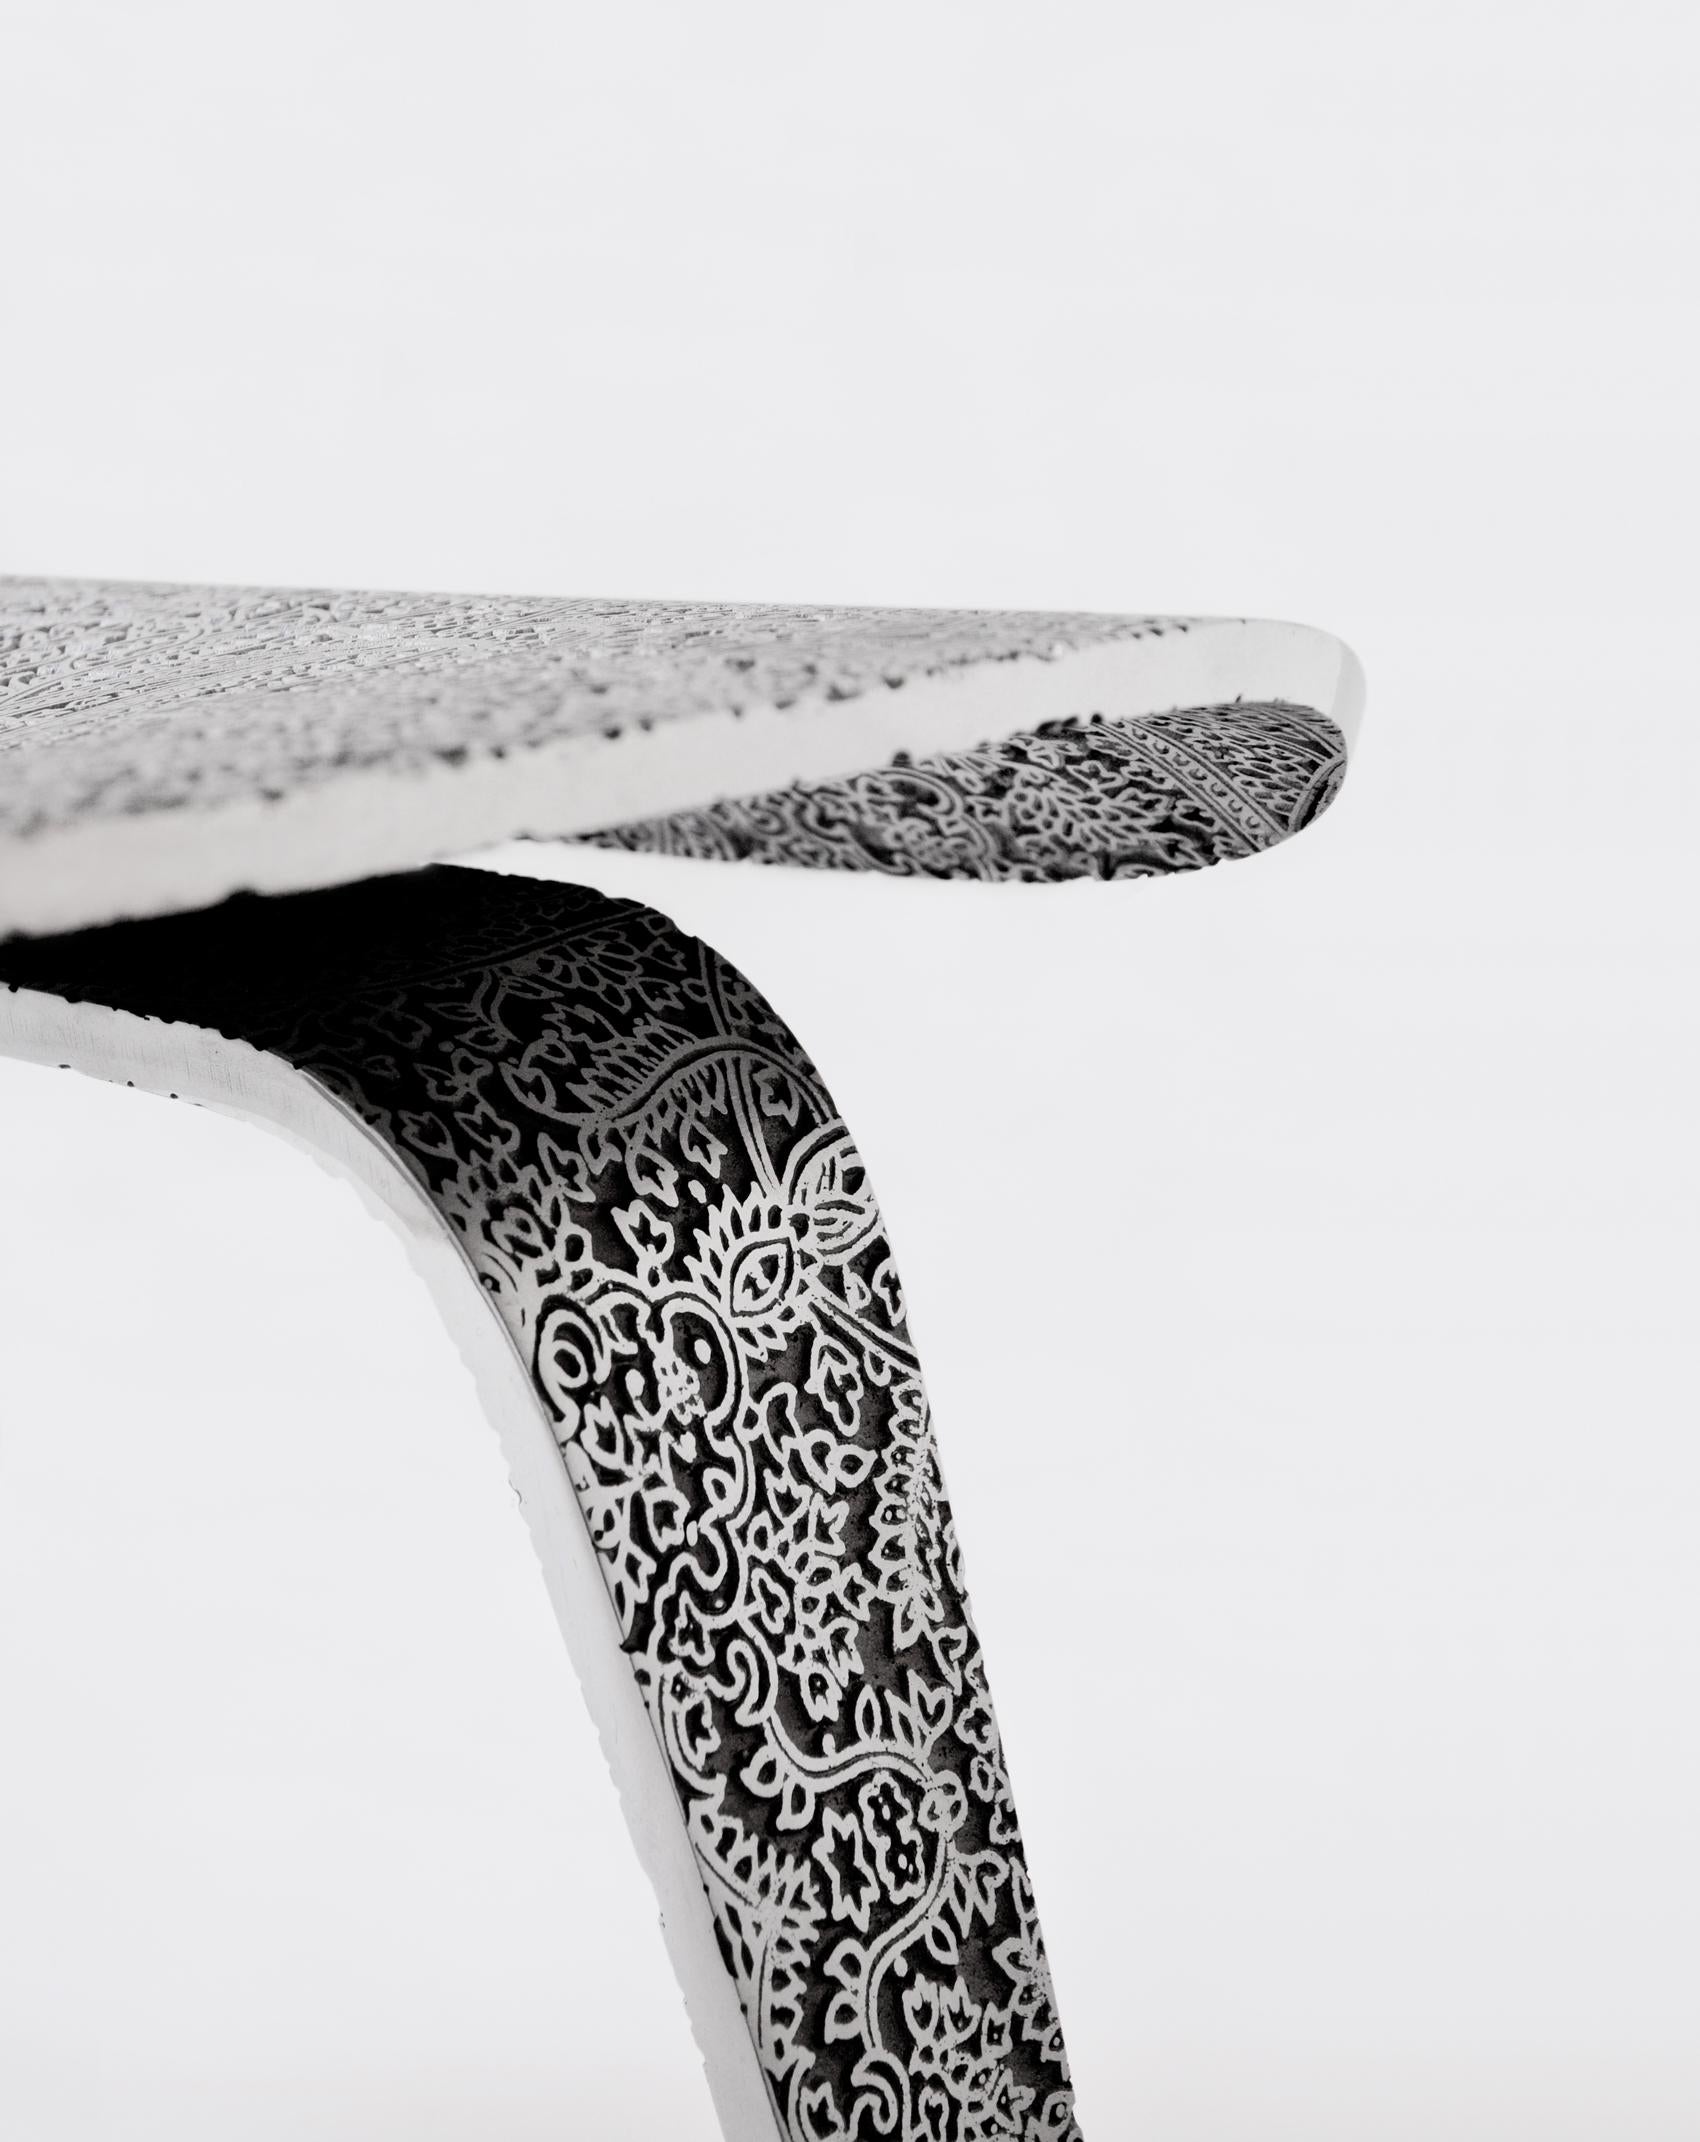 Ethno Eames - Aluminium - Chaise design Paolo Giordano Edition Cast Contemporary
Ethno Eames - Aluminium

L'application de la décoration ethnique indienne aux icônes du design moderne est à première vue provocante. C'est la superposition de